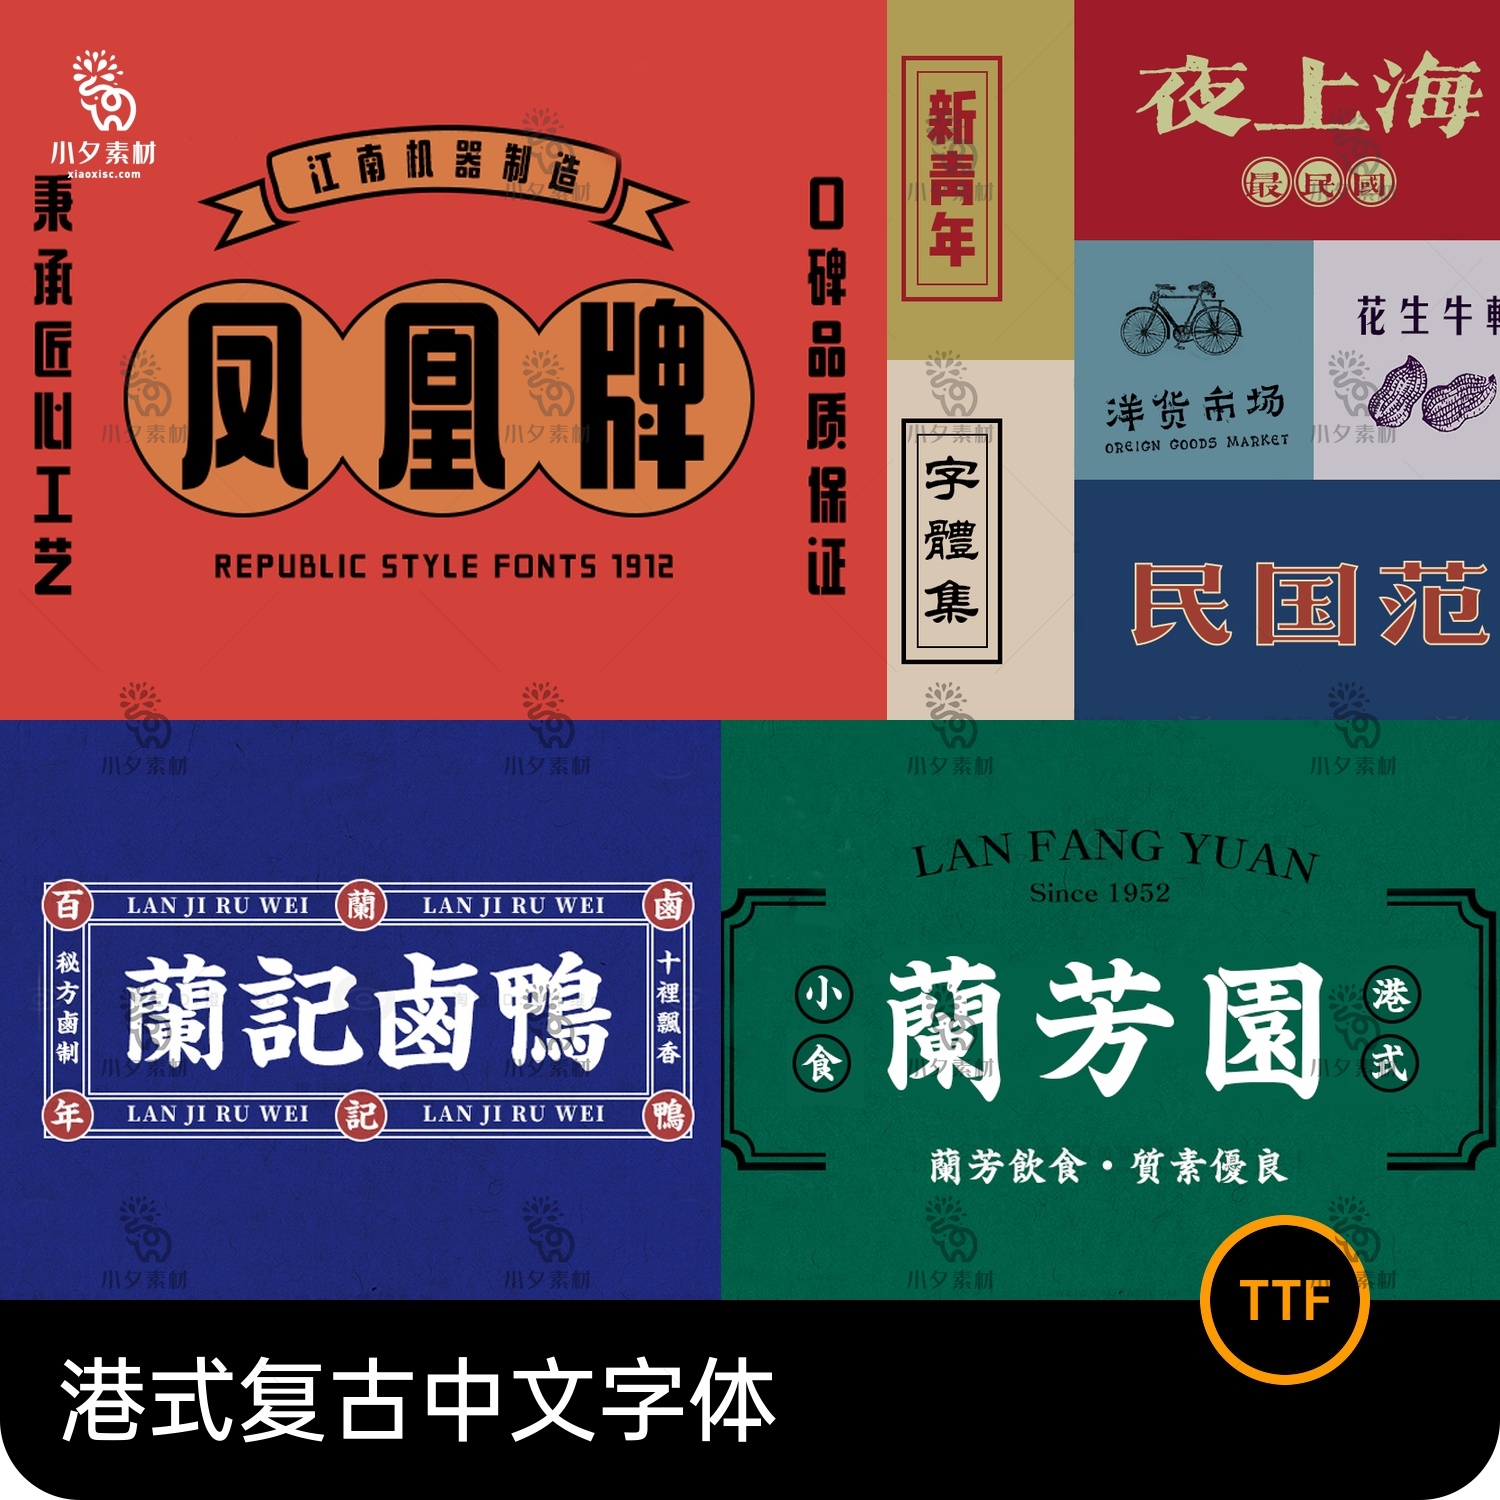 港式港风复古上海民国古典繁体中文简体美术字体海报LOGO排版素材